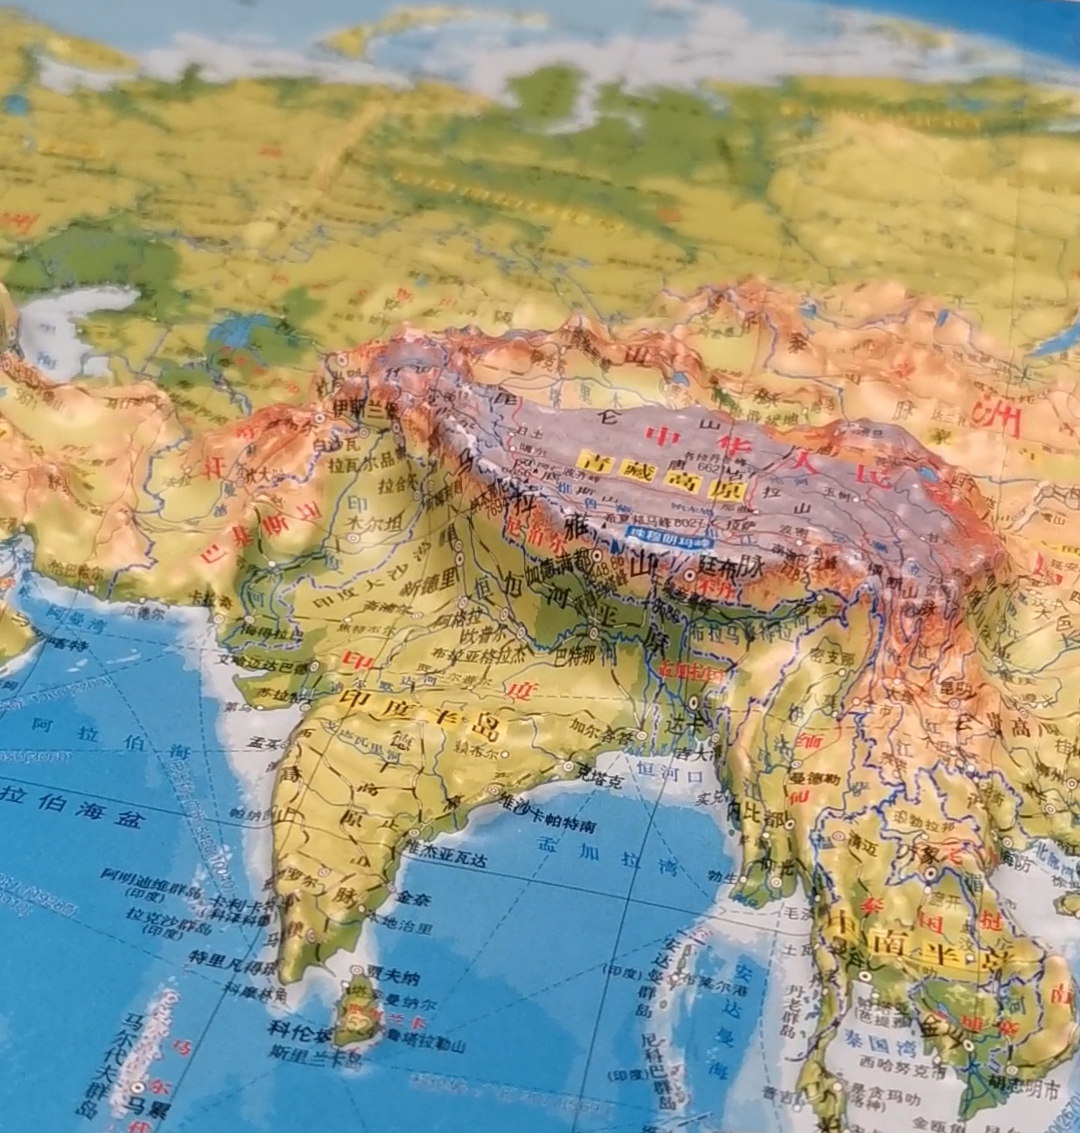 凹凸3d地图是学习历史地理知识神器